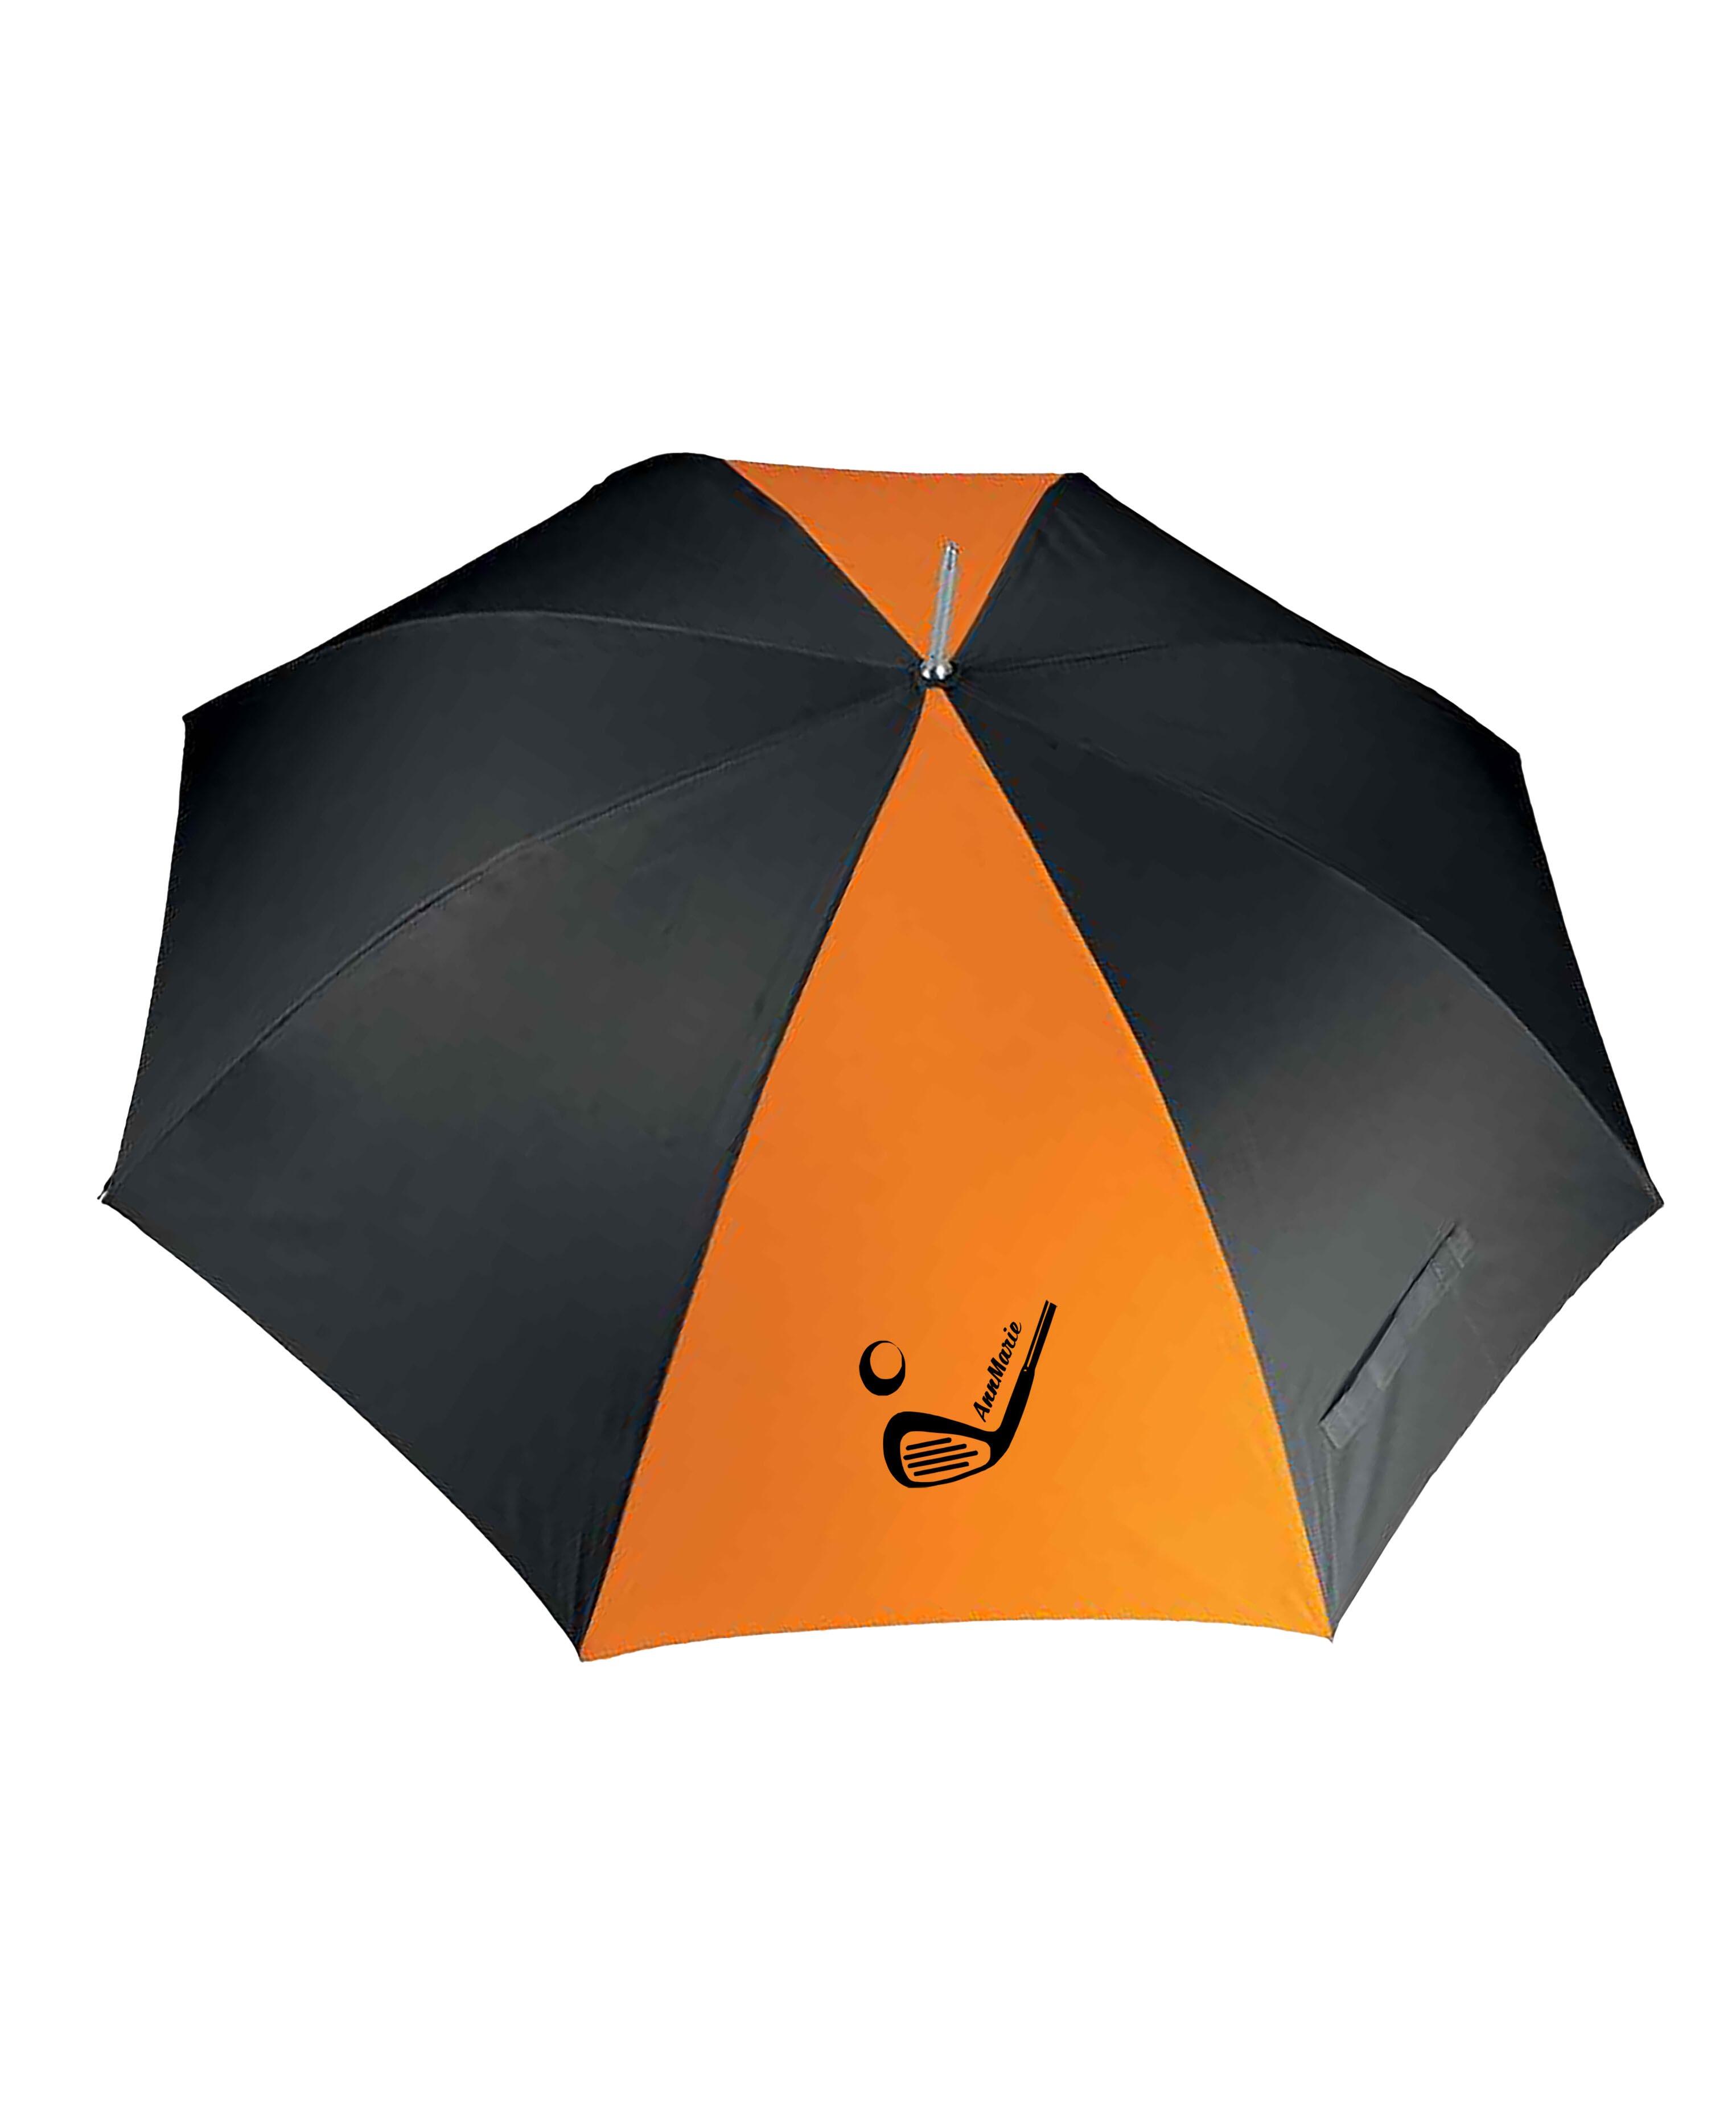 Golf Club Design X-Large Golf Umbrella Black/Orange